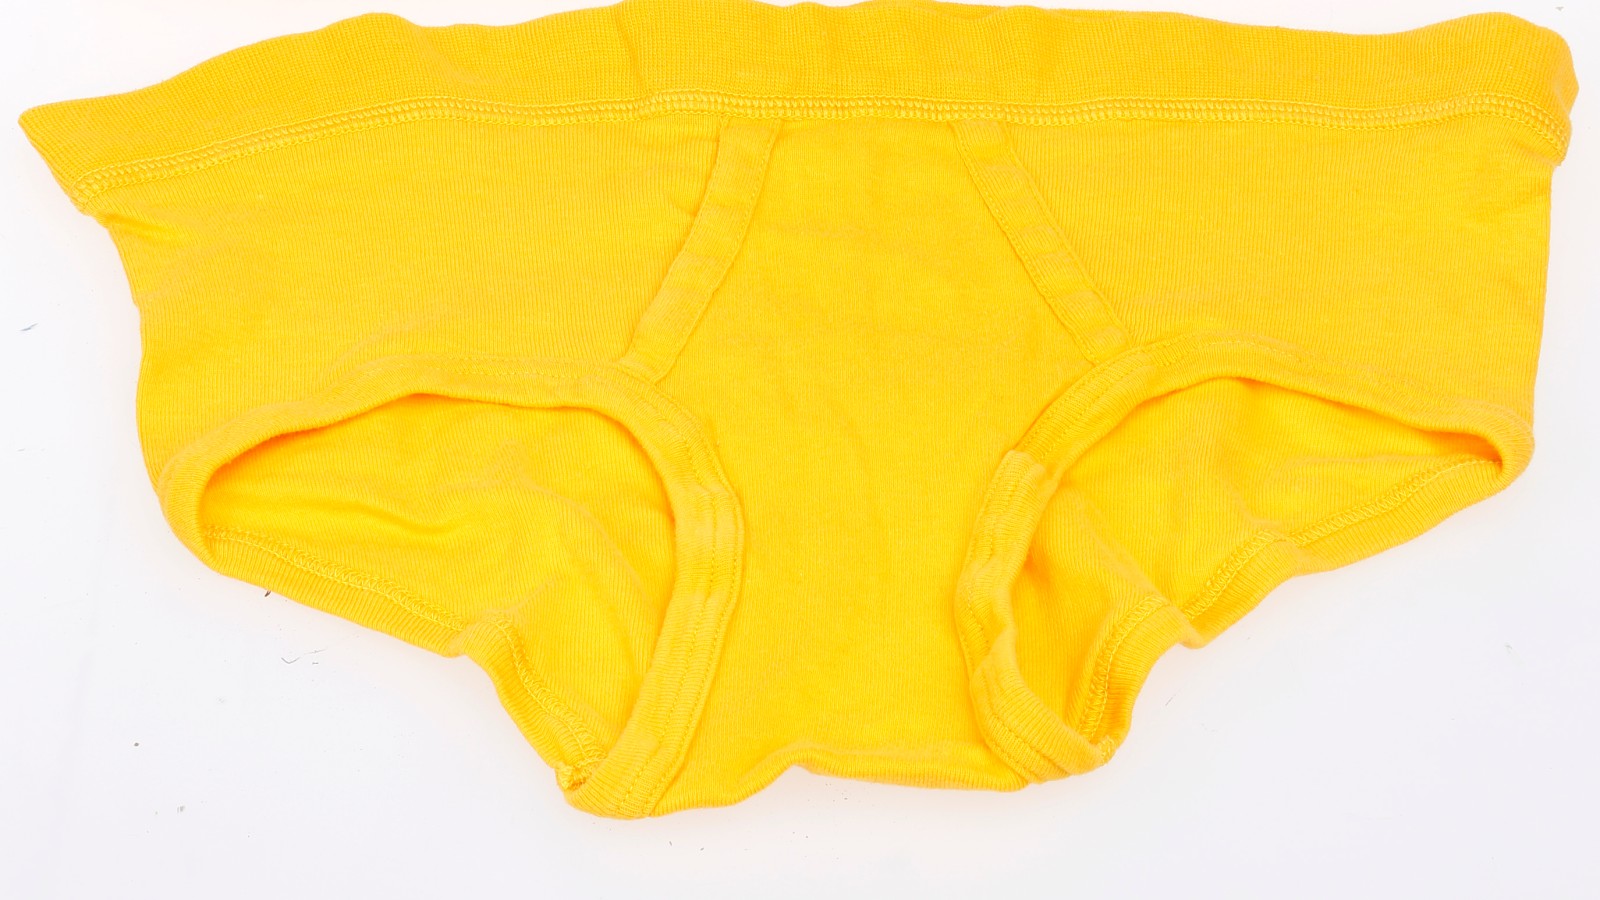 Um zu kontrollieren, dass nur die dafür gedachte Kleidung getragen wird, ist der AKW-Arbeitsanzug durchsichtig. Die dazu gehörige Unterwäsche ist gelb, da gut sichtbar, Hersteller: Benedikt Mäser Textil GmbH, 1975